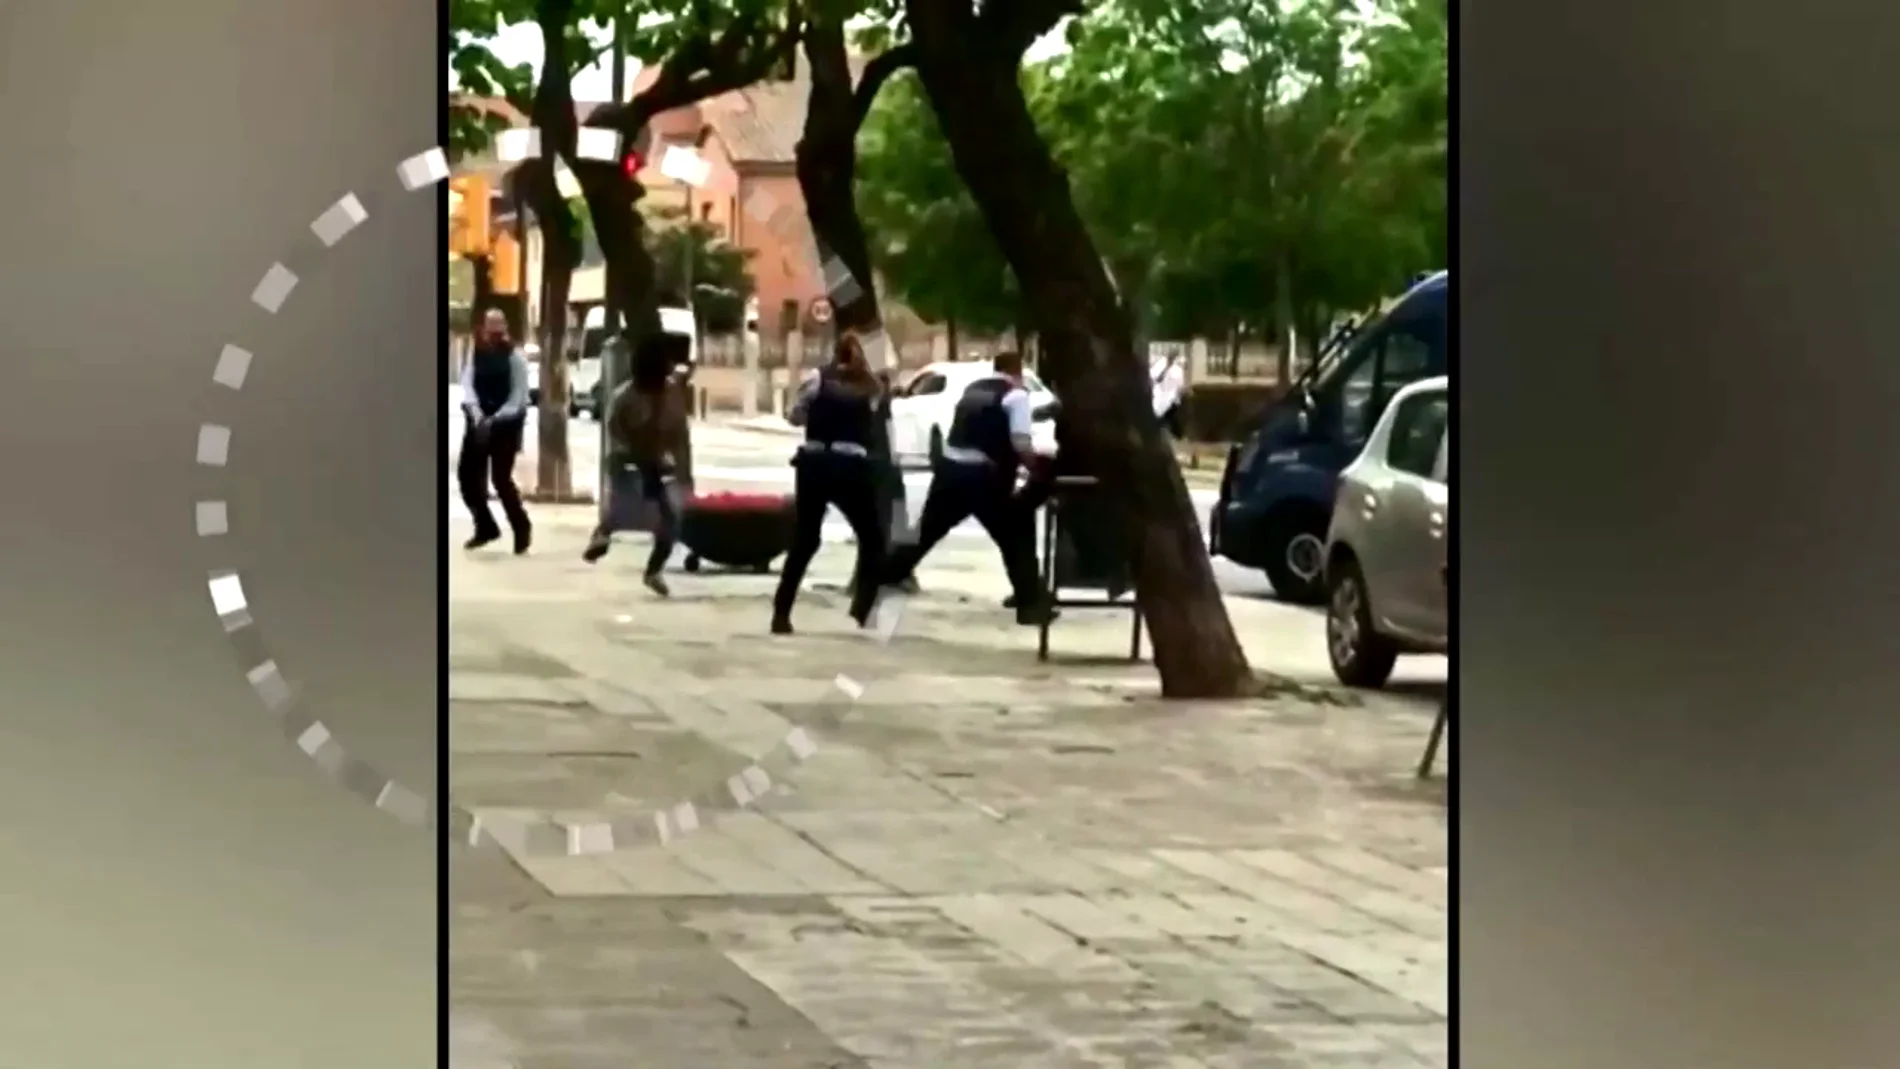 Vídeo: Así han detenido los Mossos a un presunto atracador disparándole en la pierna en Lleida